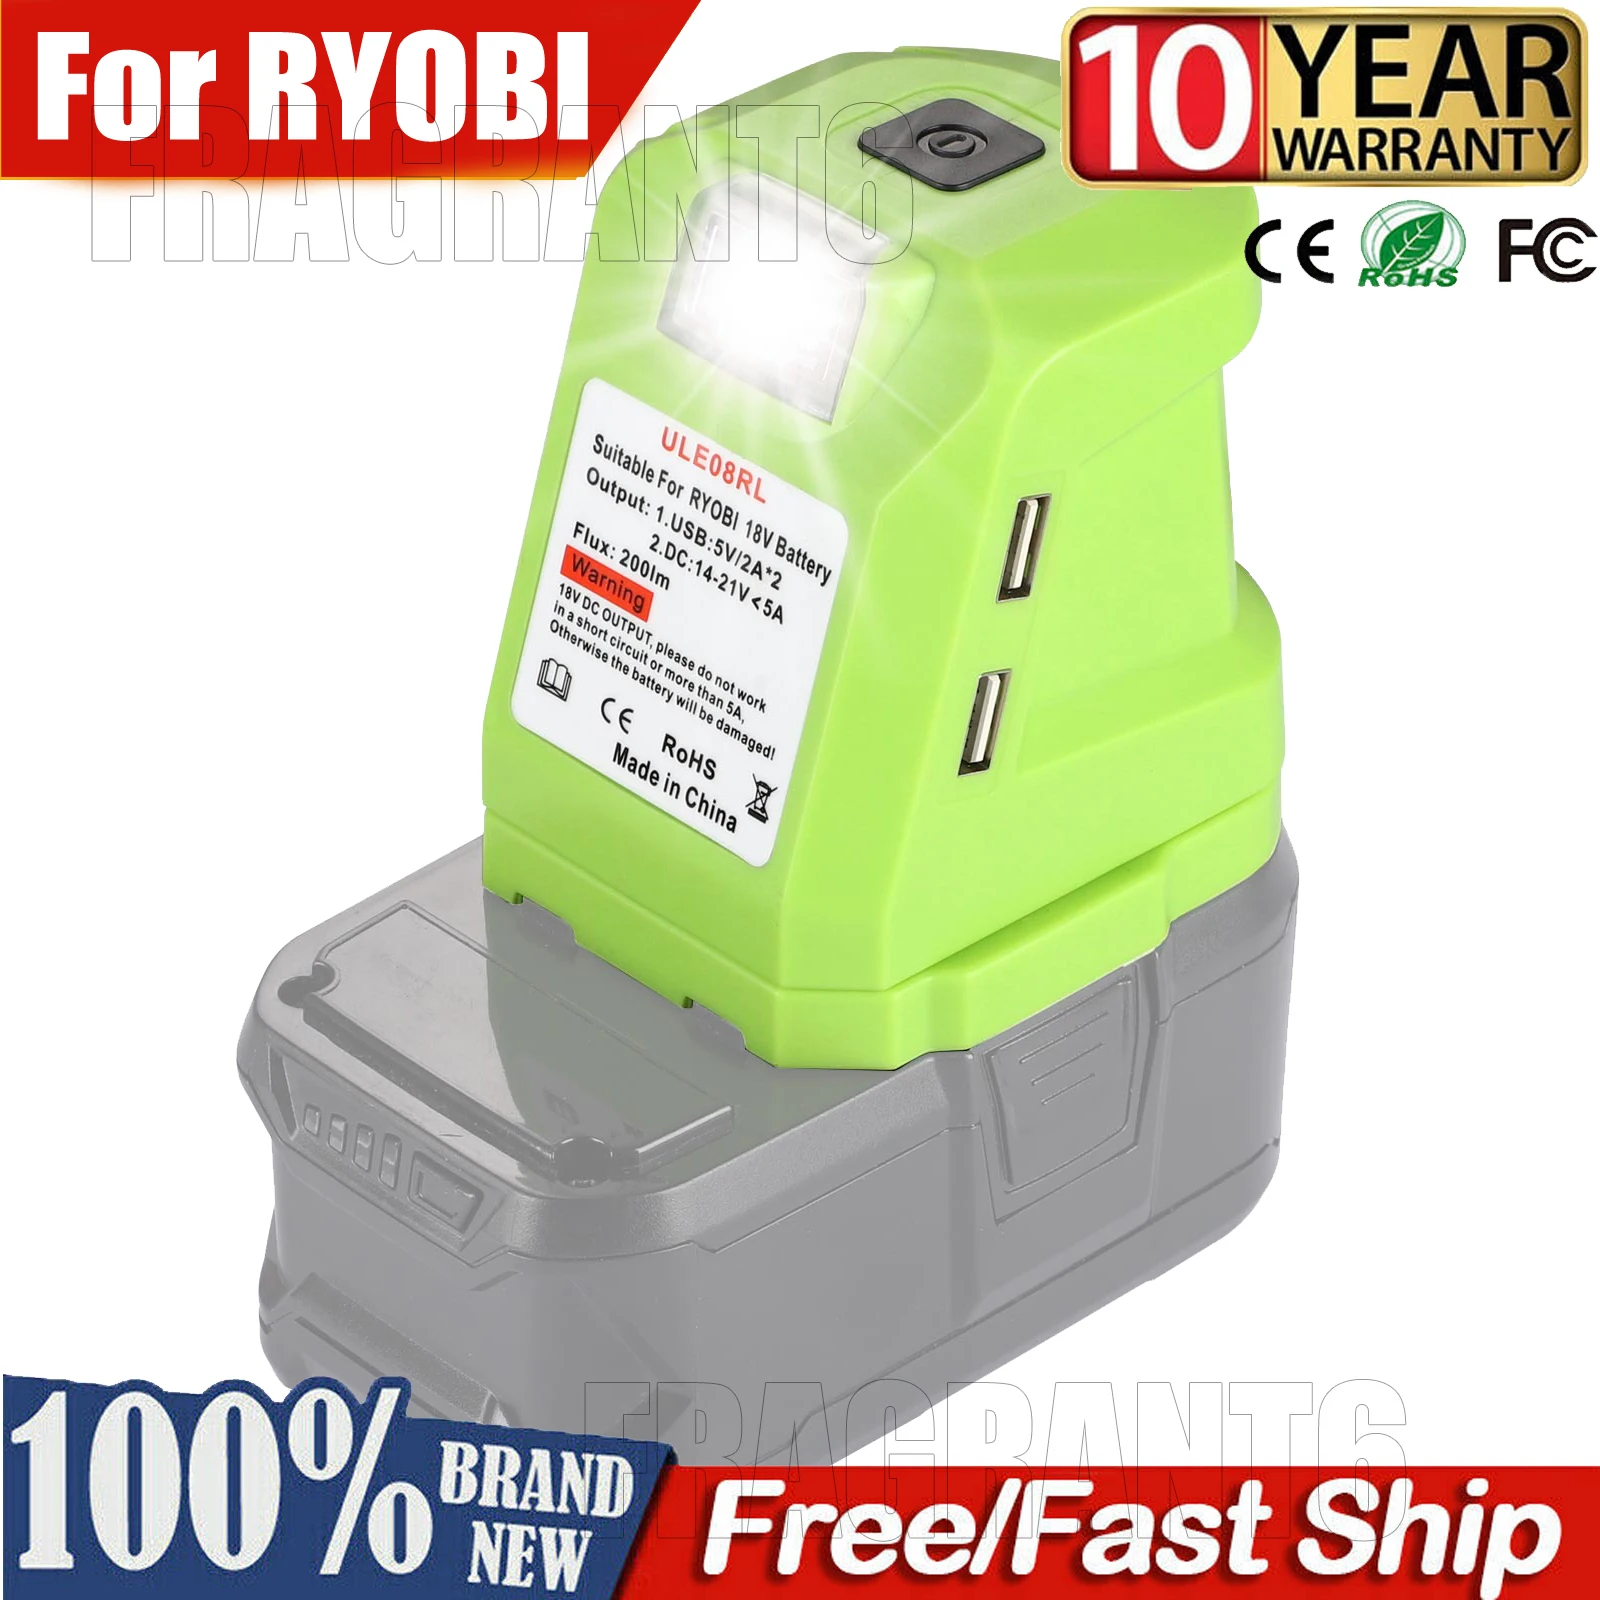 For RYOBI 14.4V/18V Lion Battery Dual USB converter Port with LED Light Spotlight Outdoor Flashlight for RYOBI Batteries